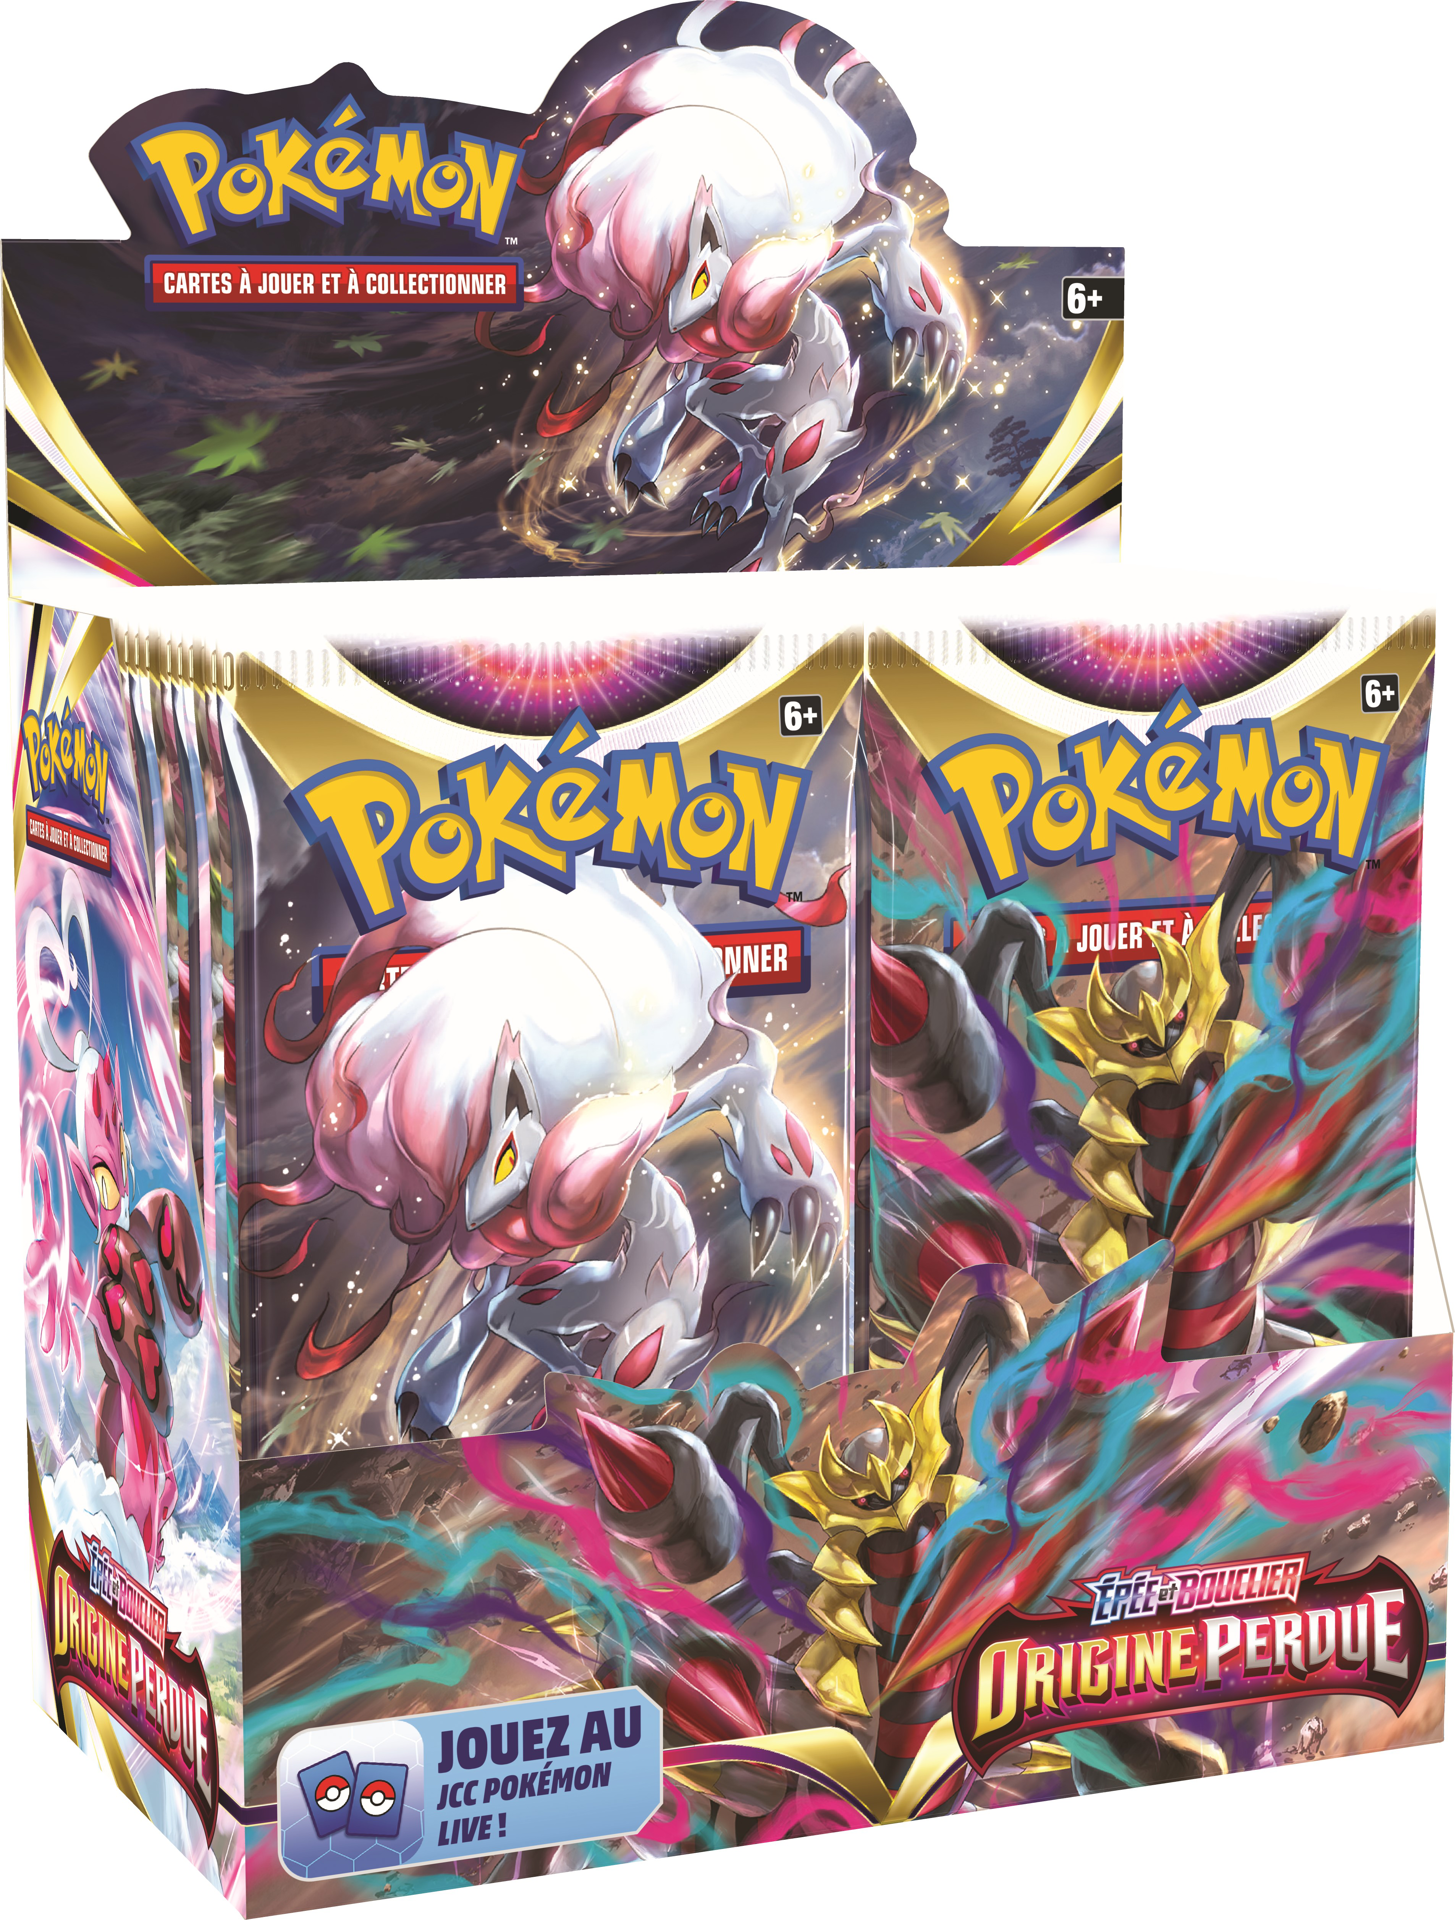 Pokémon JCC - Epée et Bouclier - Pack de Booster Origine Perdue (Display x36)